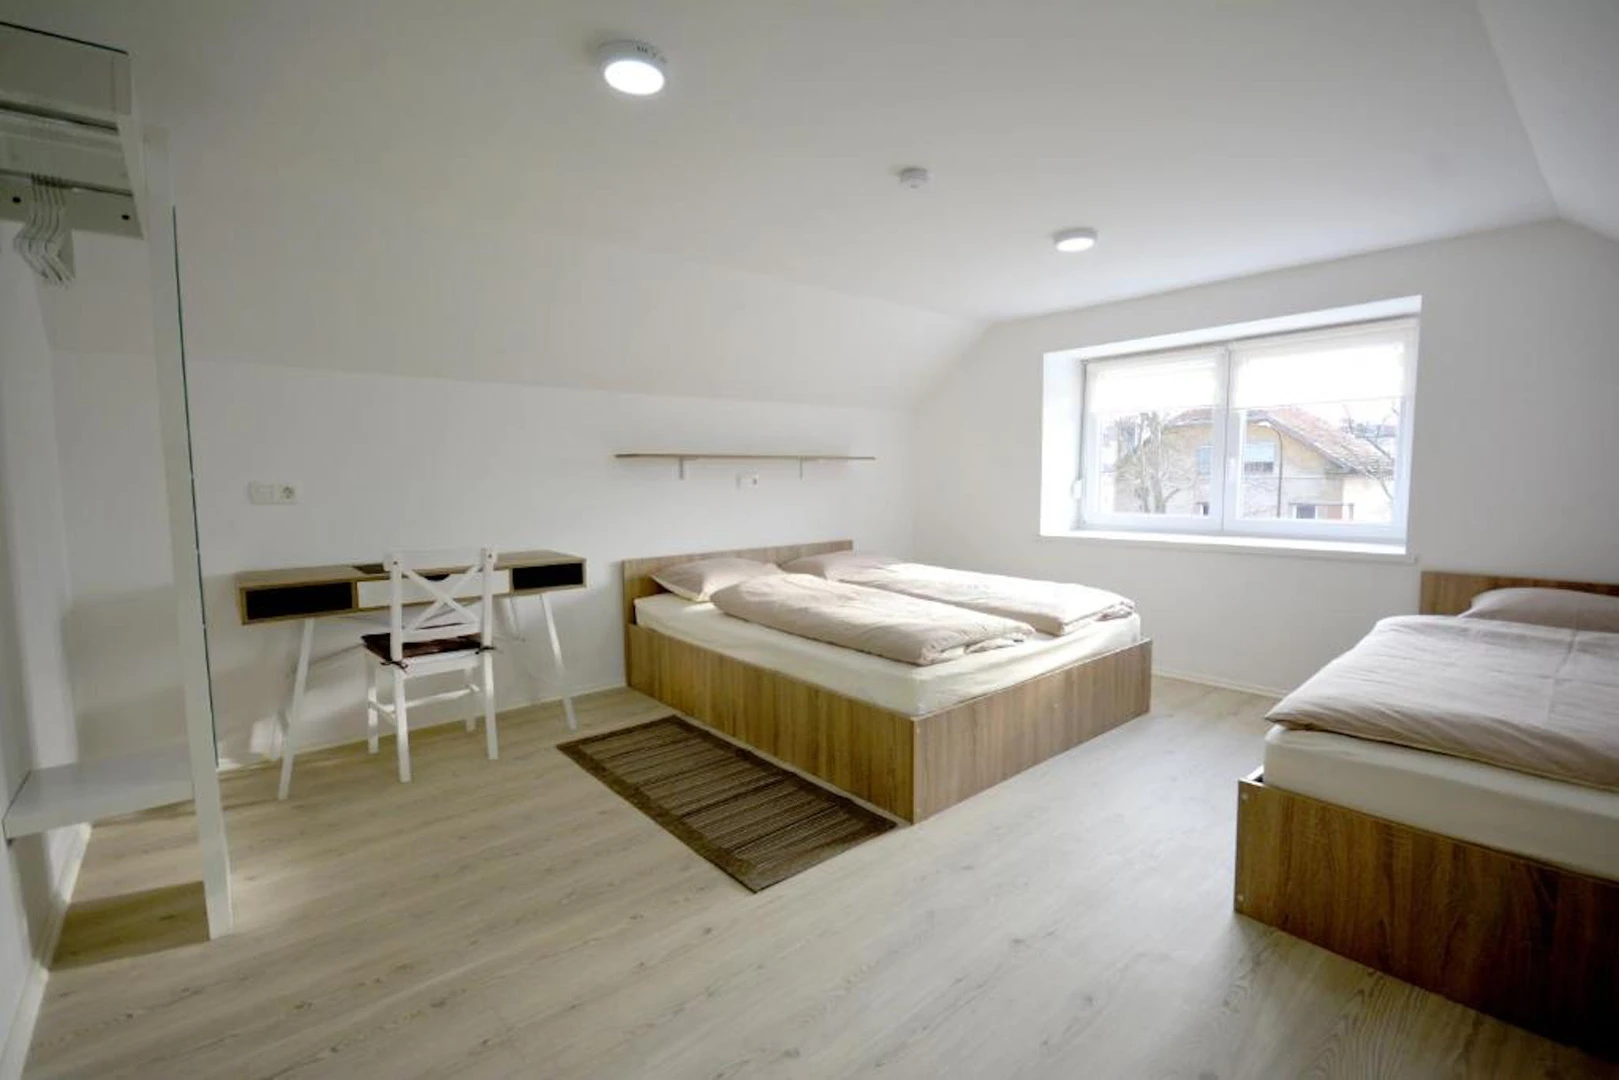 Chambre à louer dans un appartement en colocation à ljubljana